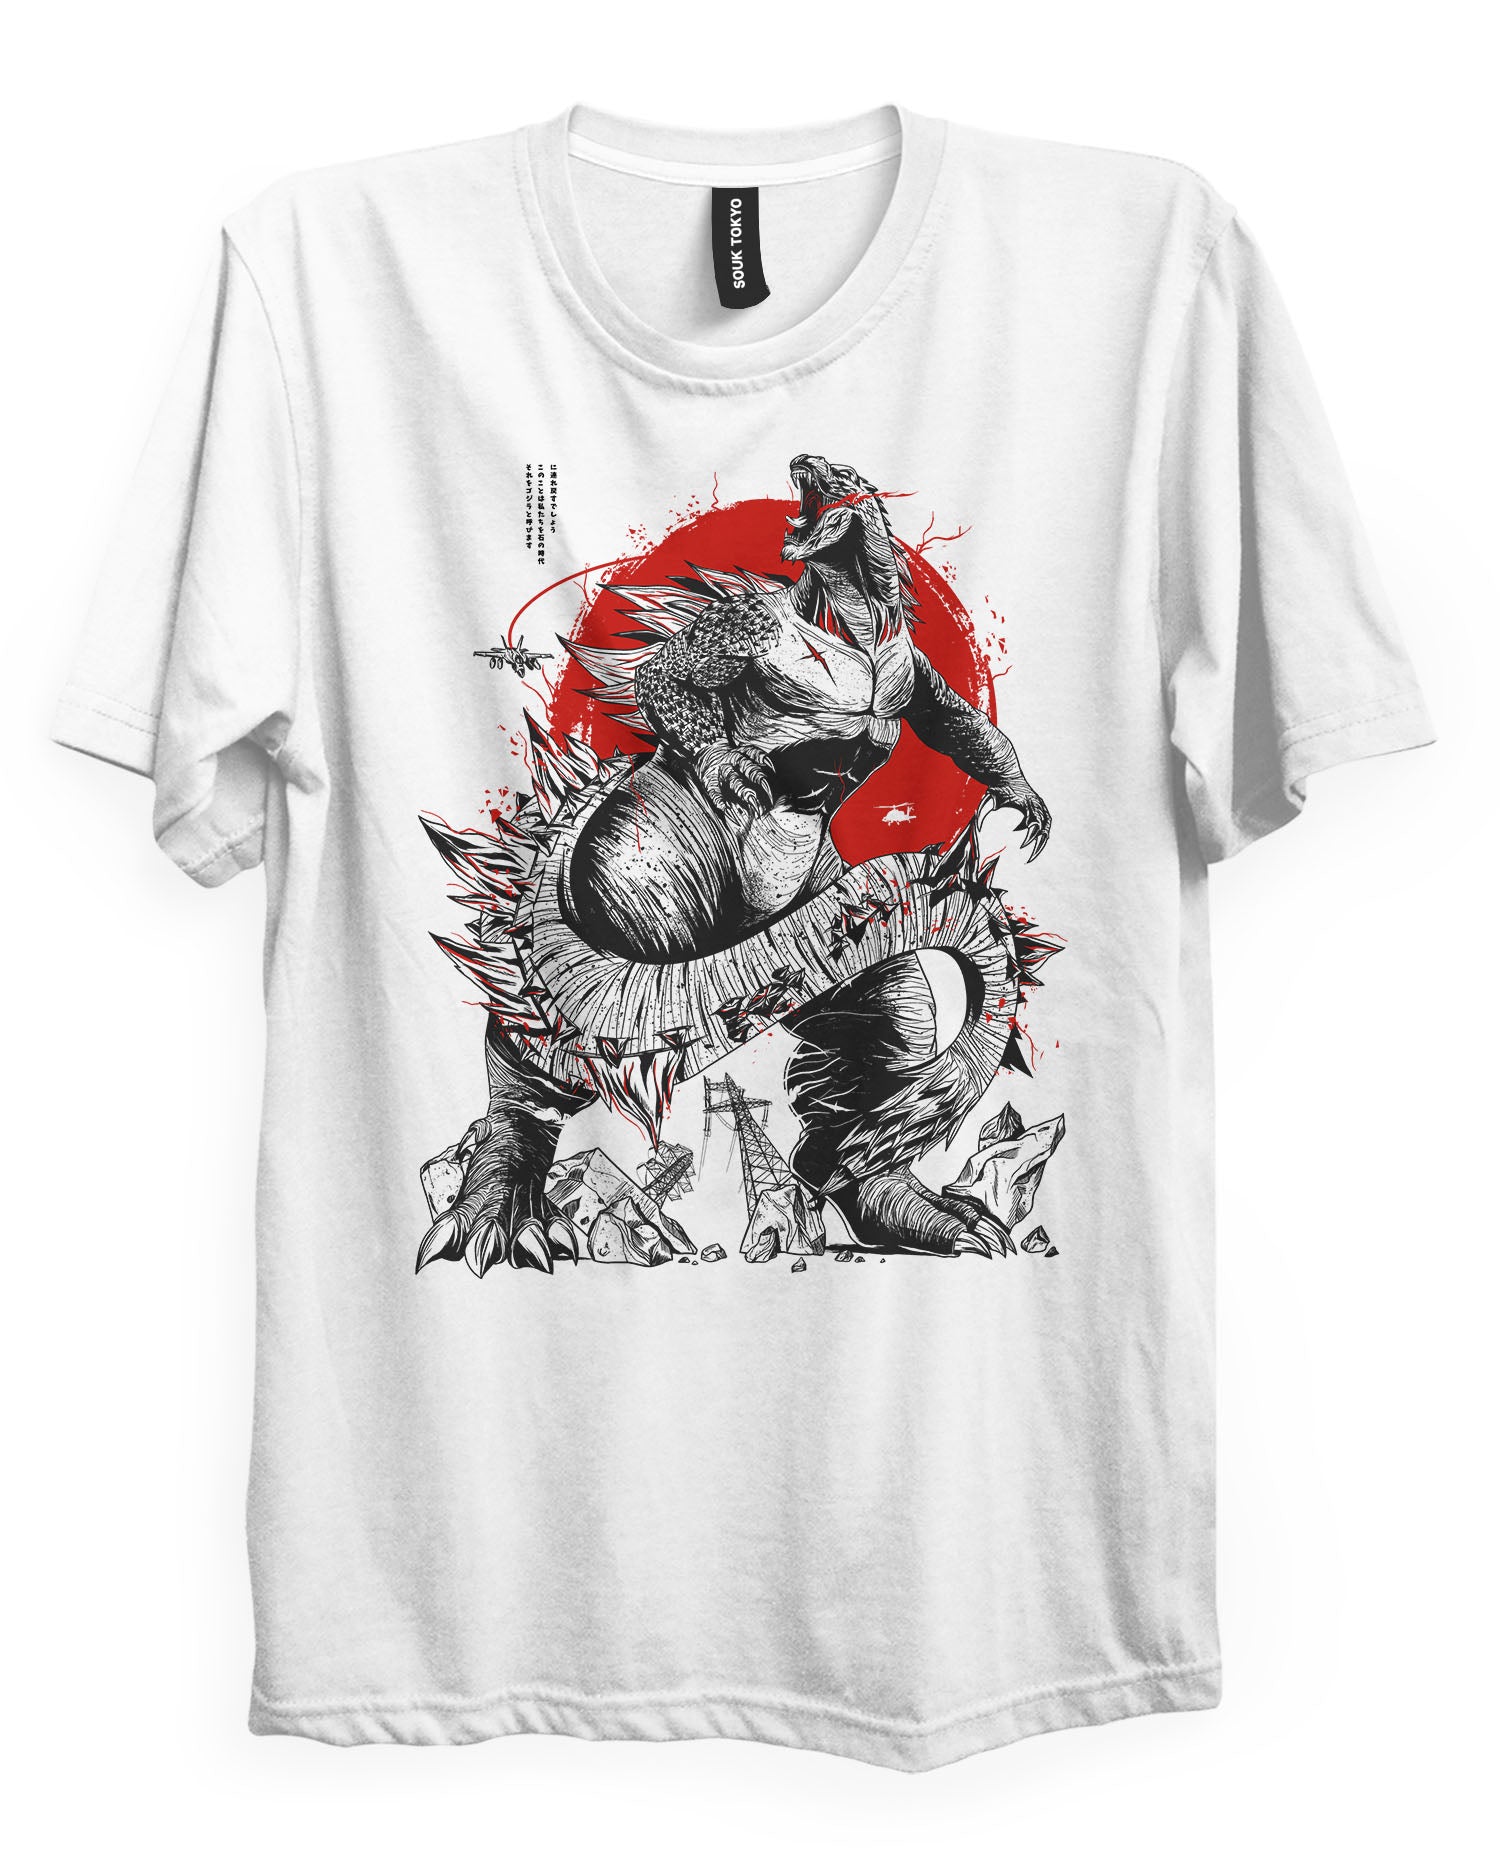 GODZILLA - Kaiju T-Shirt